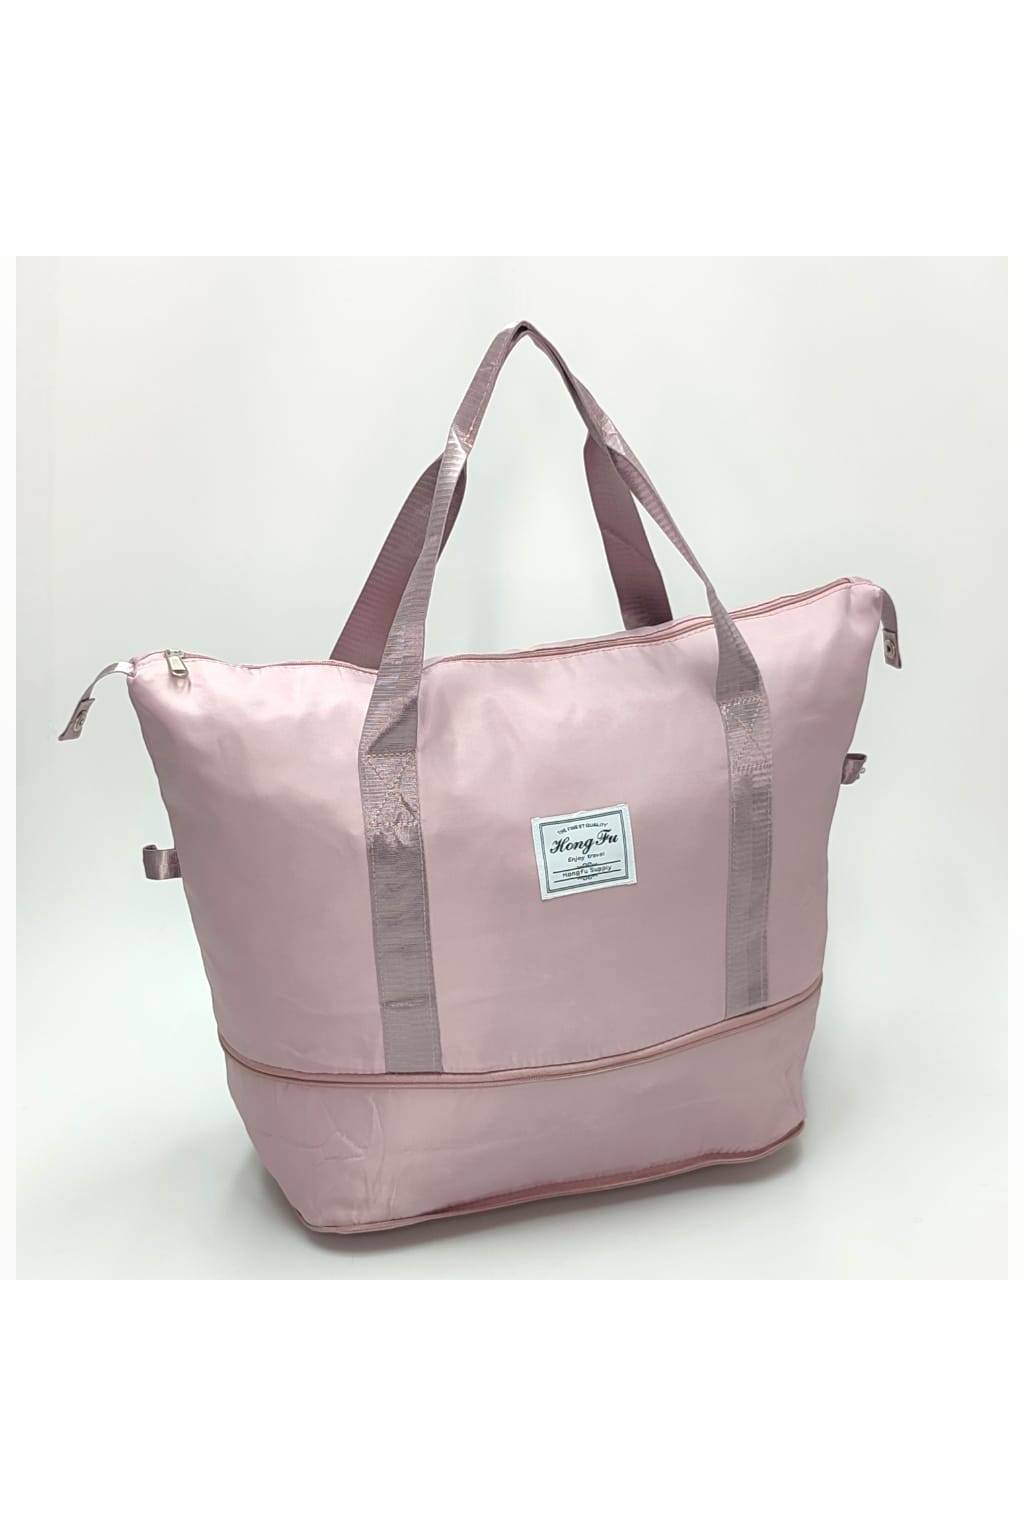 Multifunkčná taška B 6562 púdrovo ružová www.kabelky vypredaj (12)